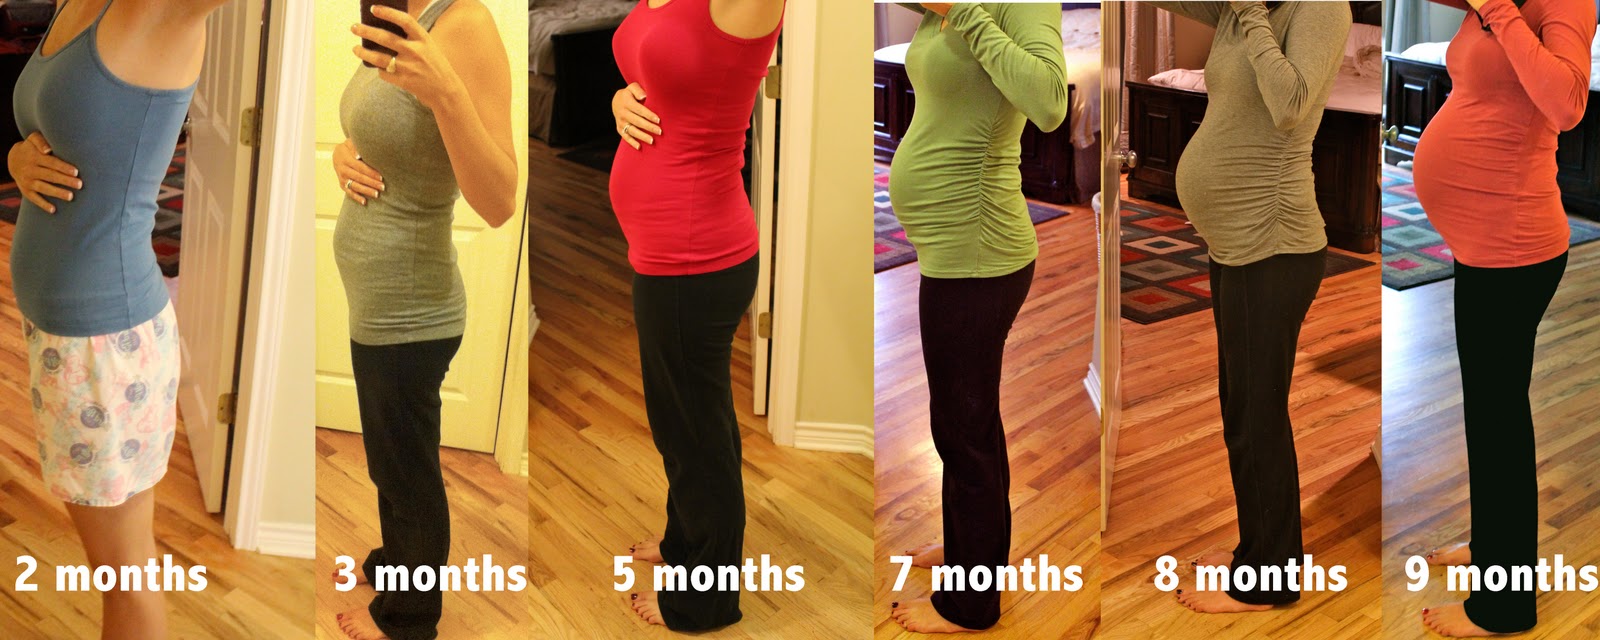 Живот на 4 месяце беременности фото у полных женщин